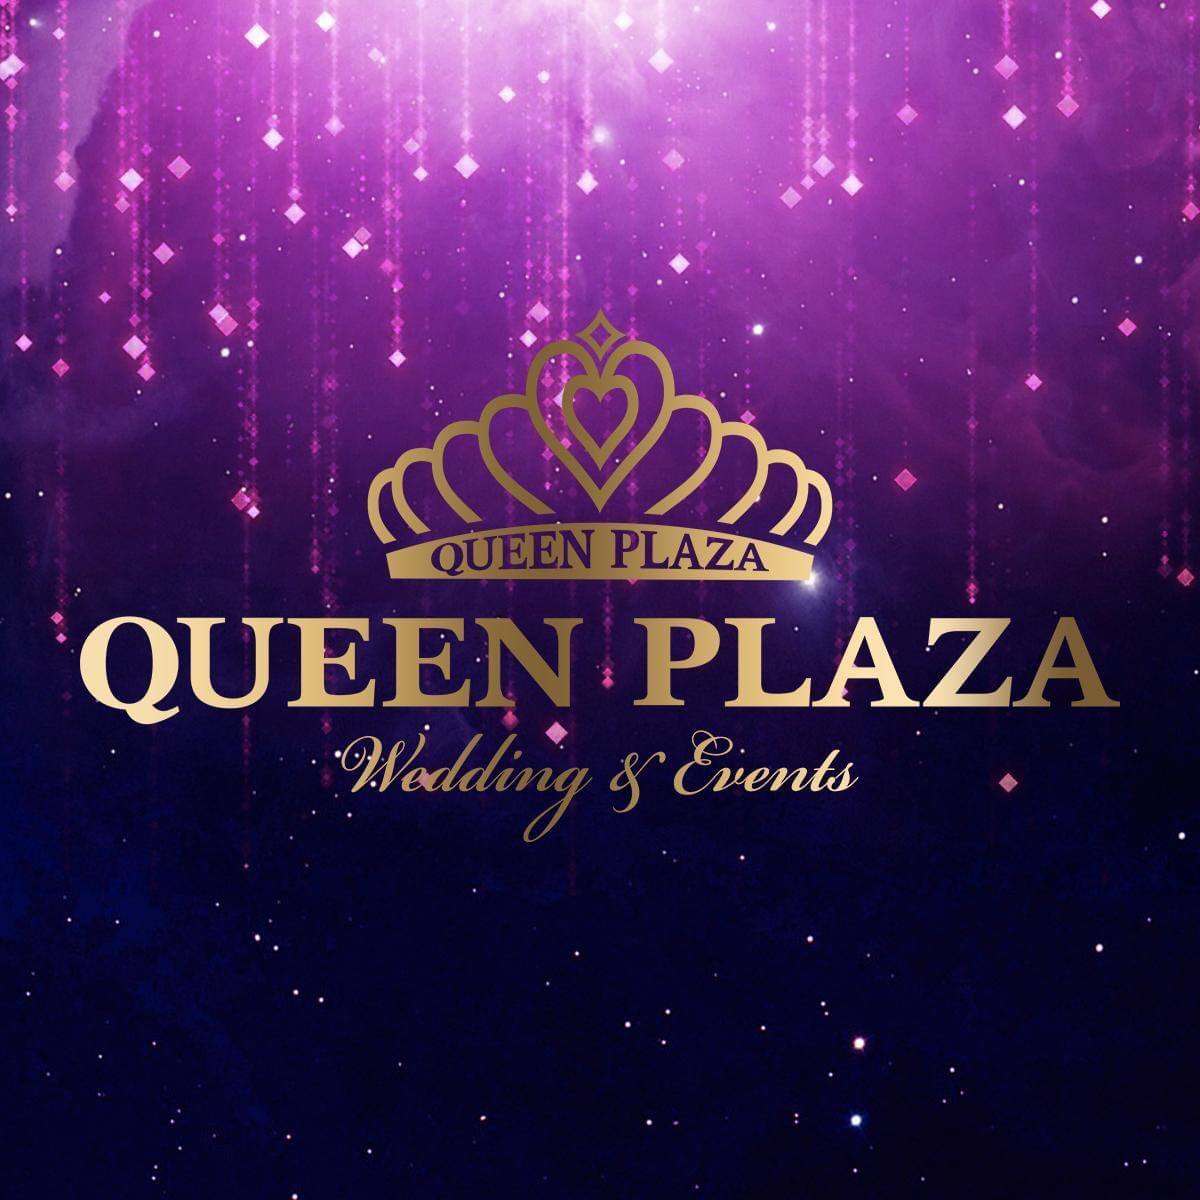 Queen Plaza Wedding & Event